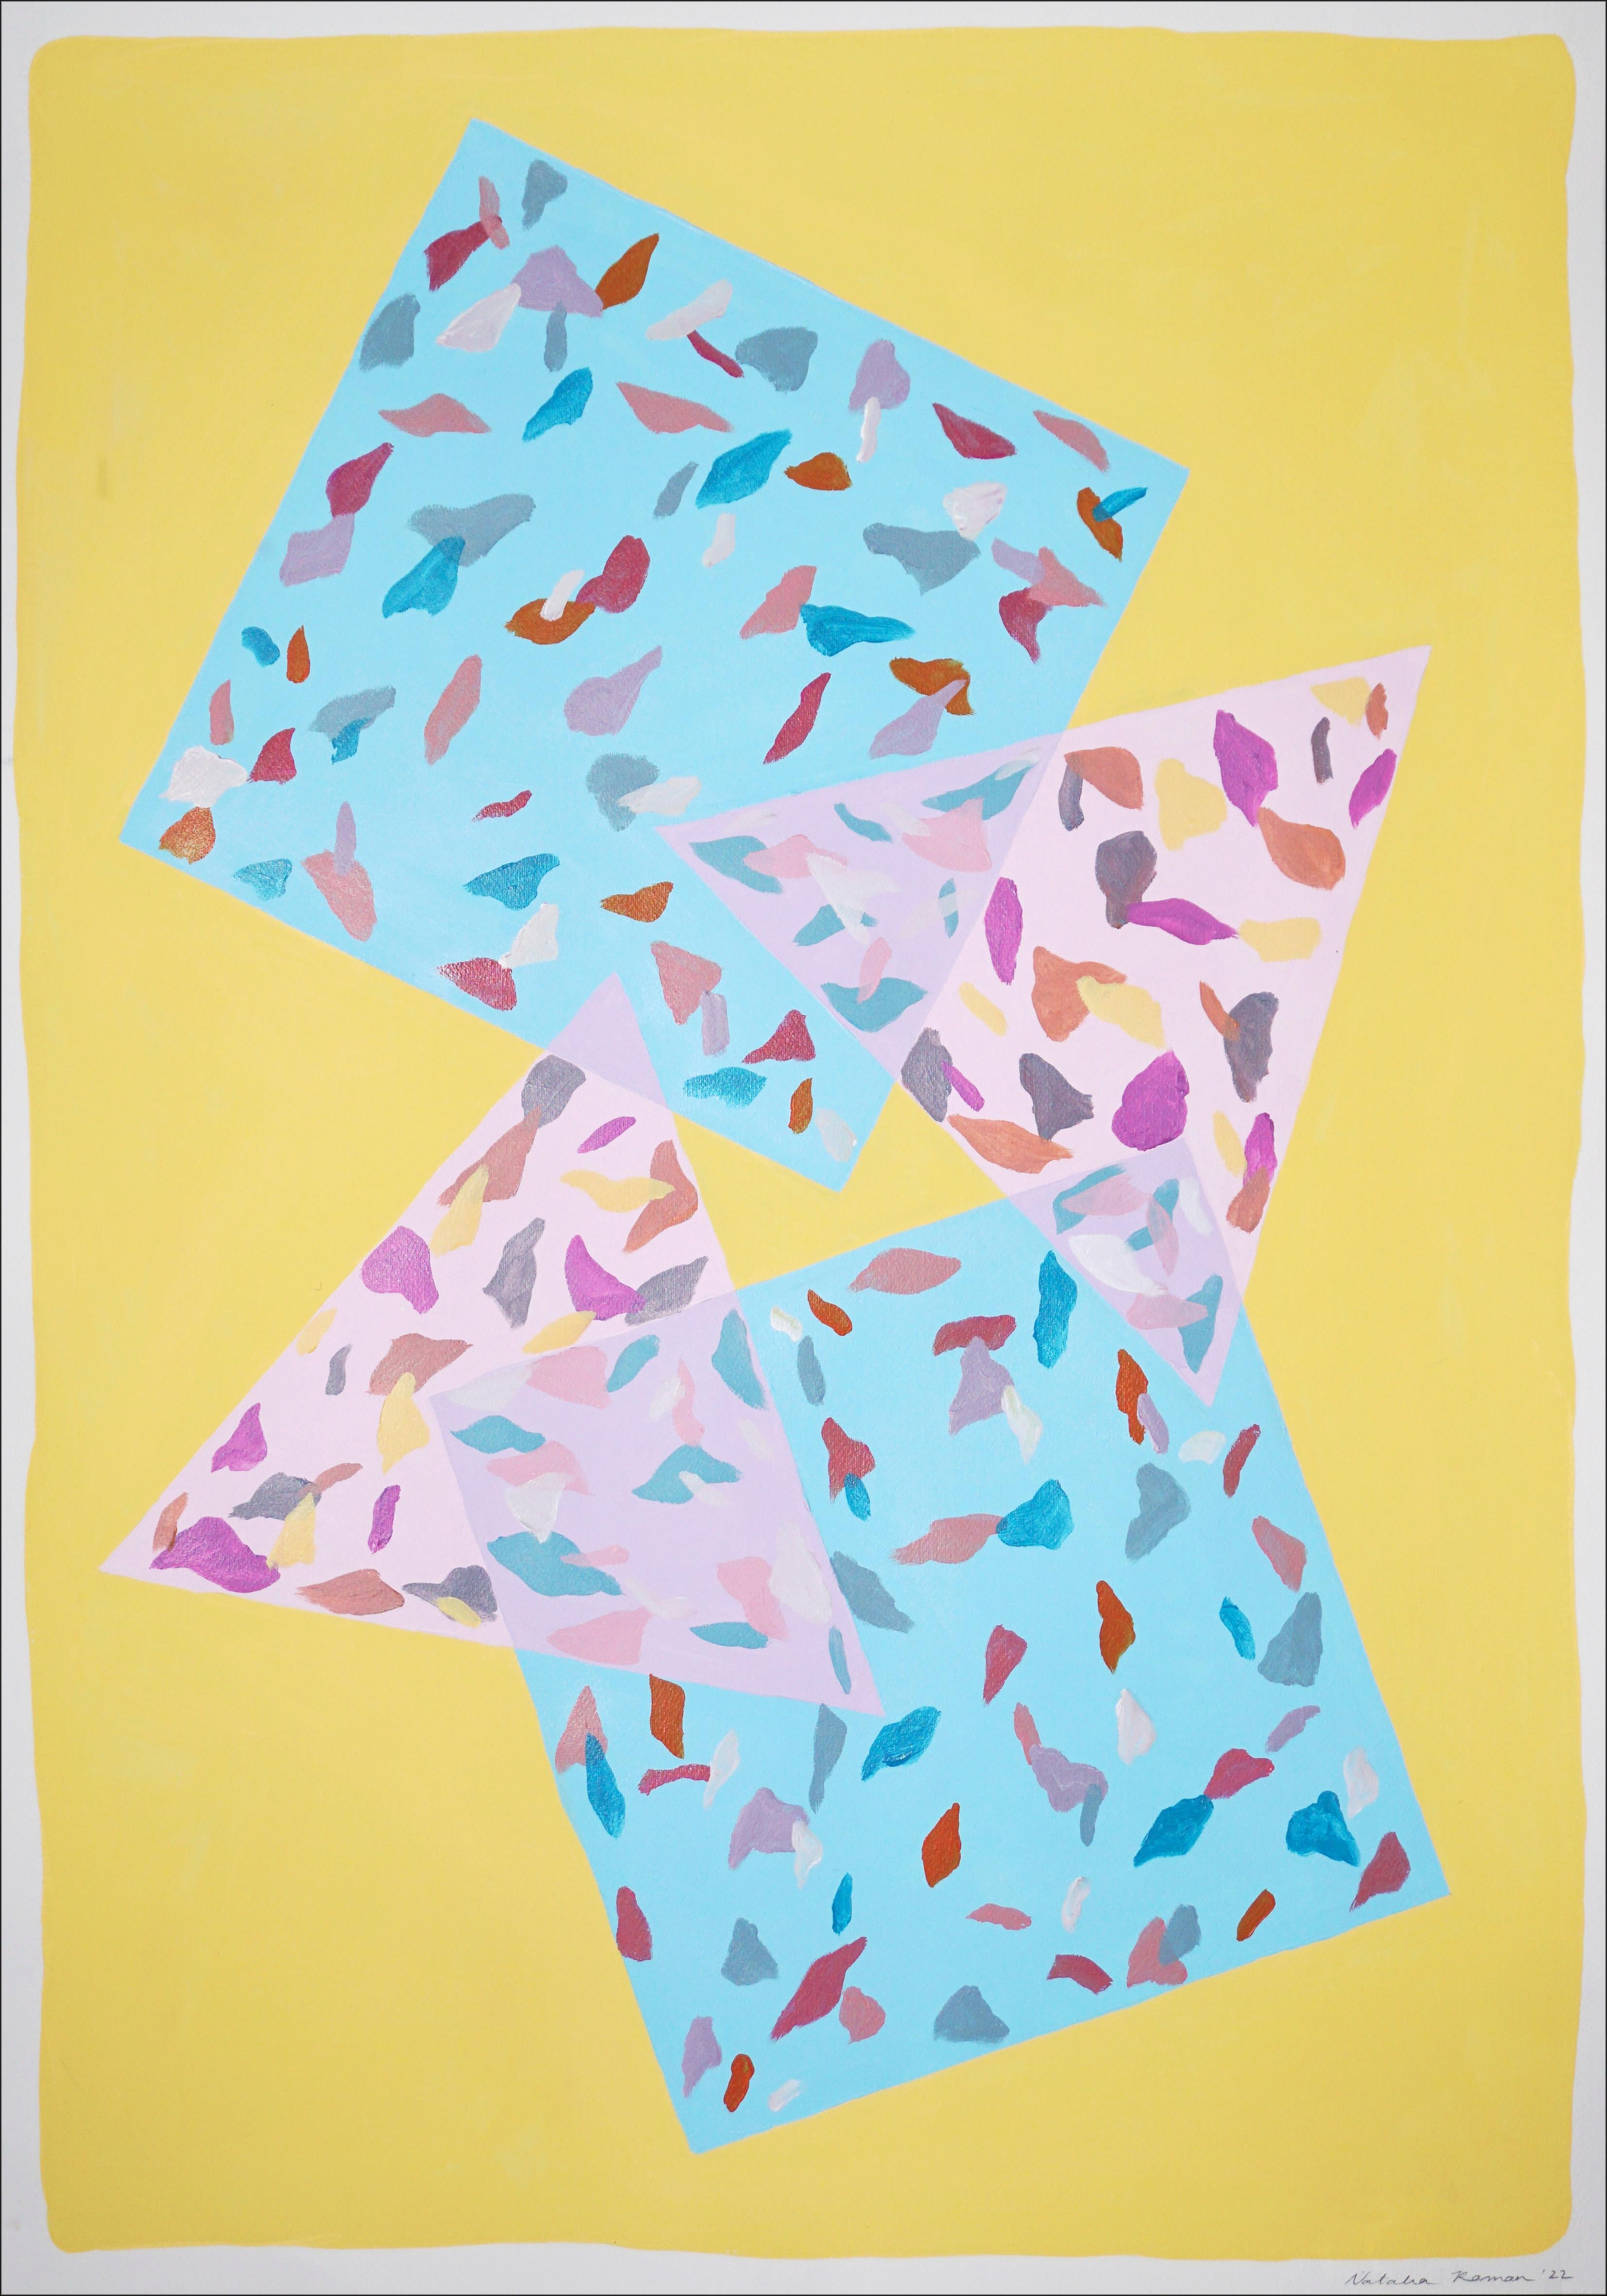 Abstract Painting Natalia Roman - Tapis en terrazzo bleu et rose, fond jaune, peinture géométrique, abstrait  